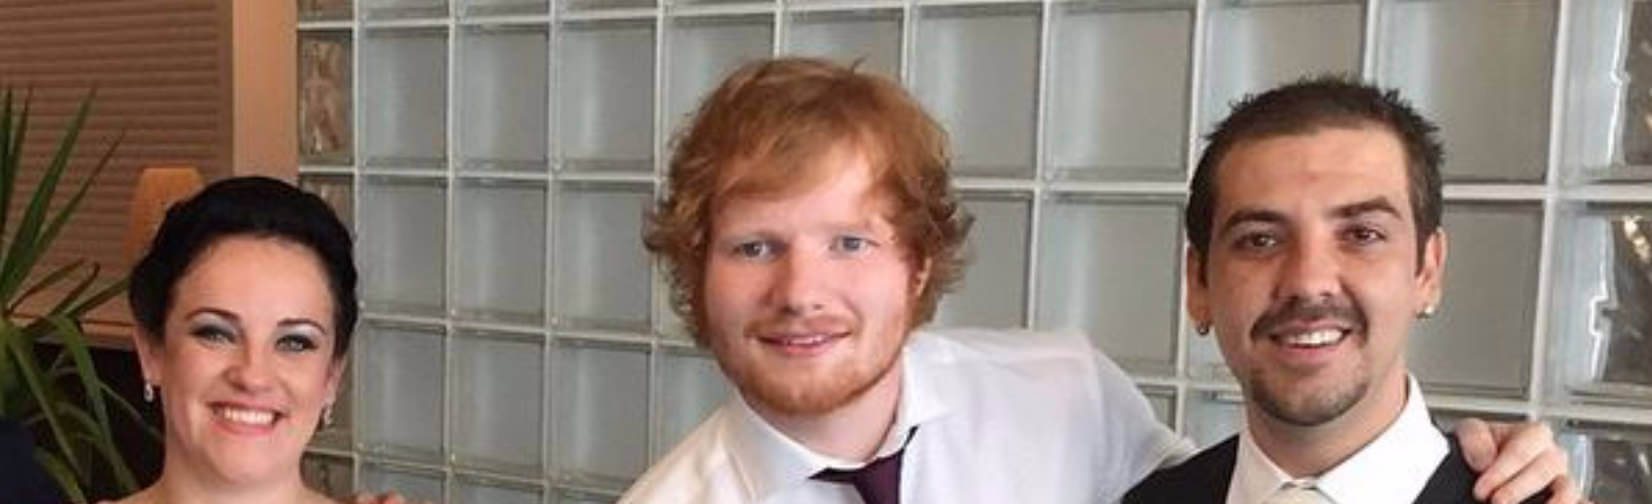 Ed Sheeran Sings at Wedding